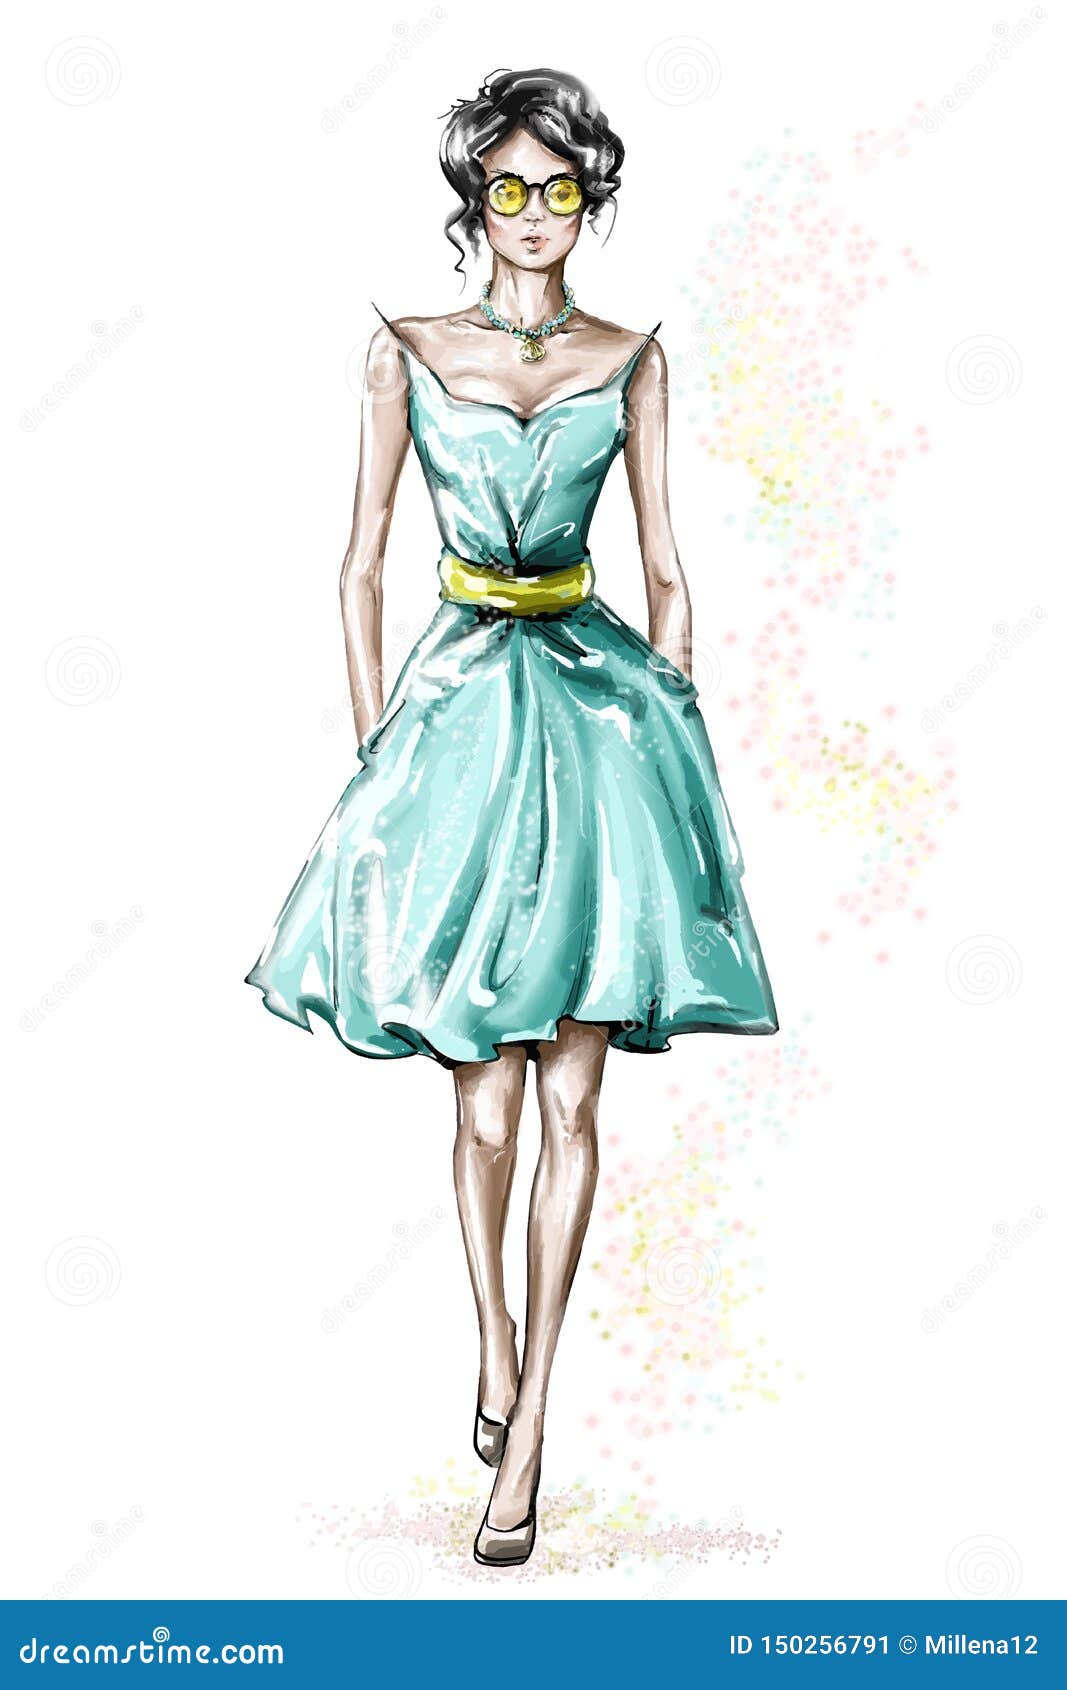 girl in dress